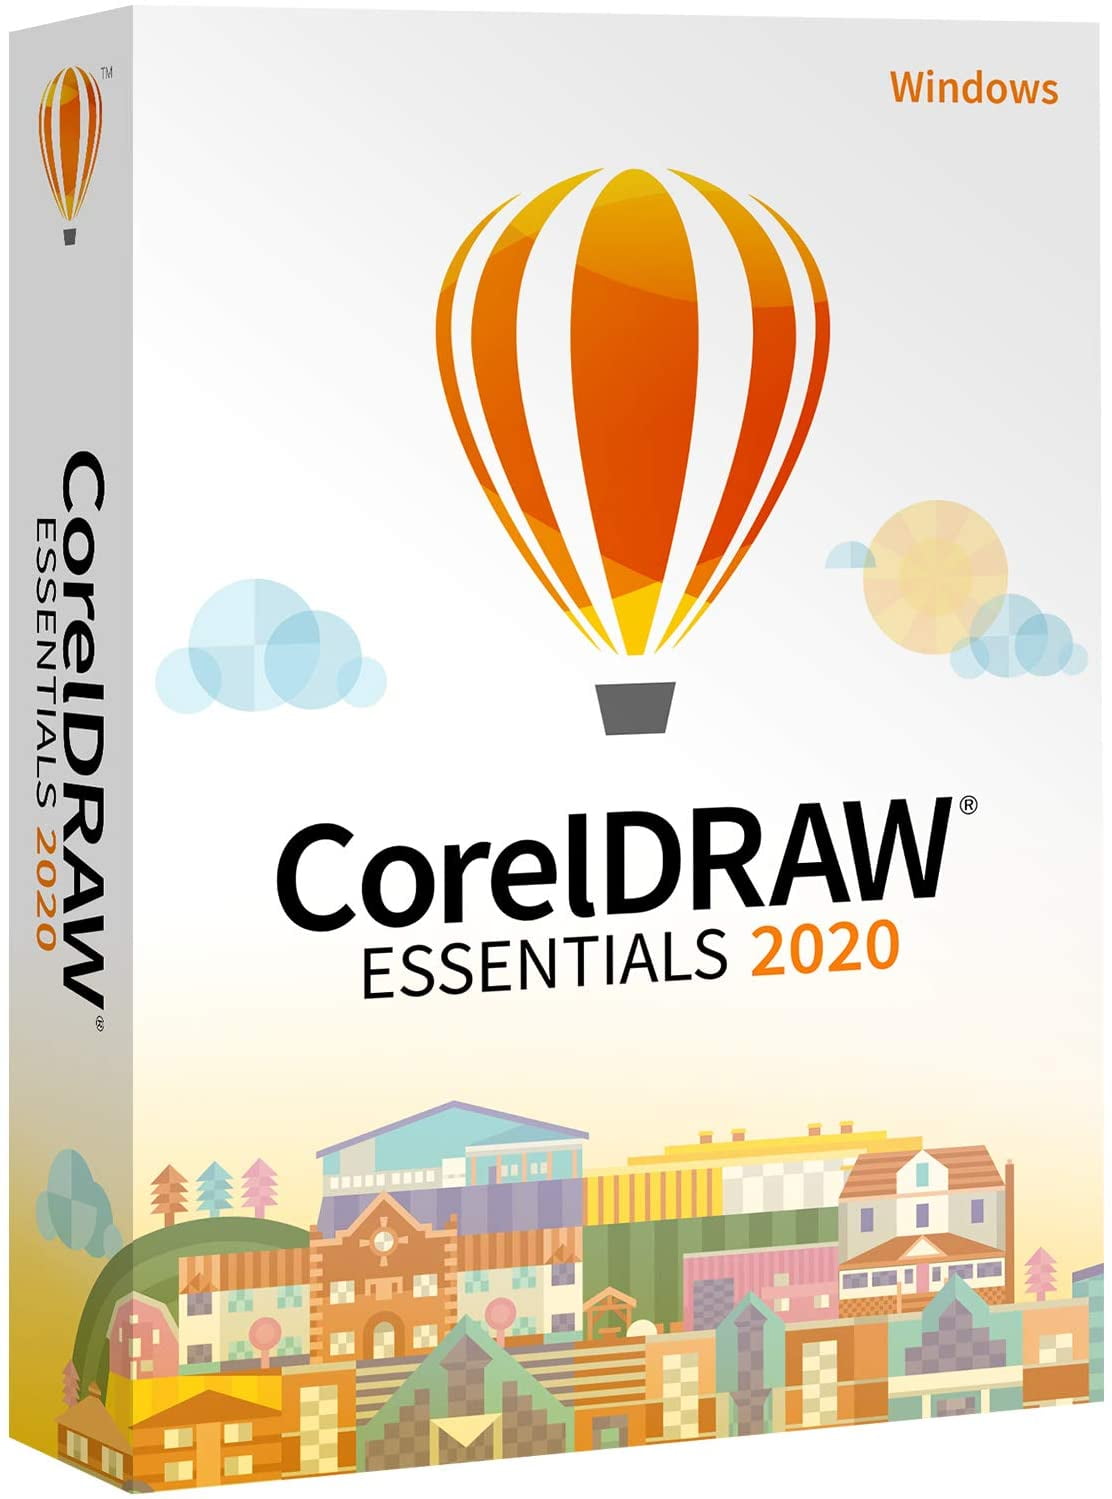 coreldraw essentials 2020